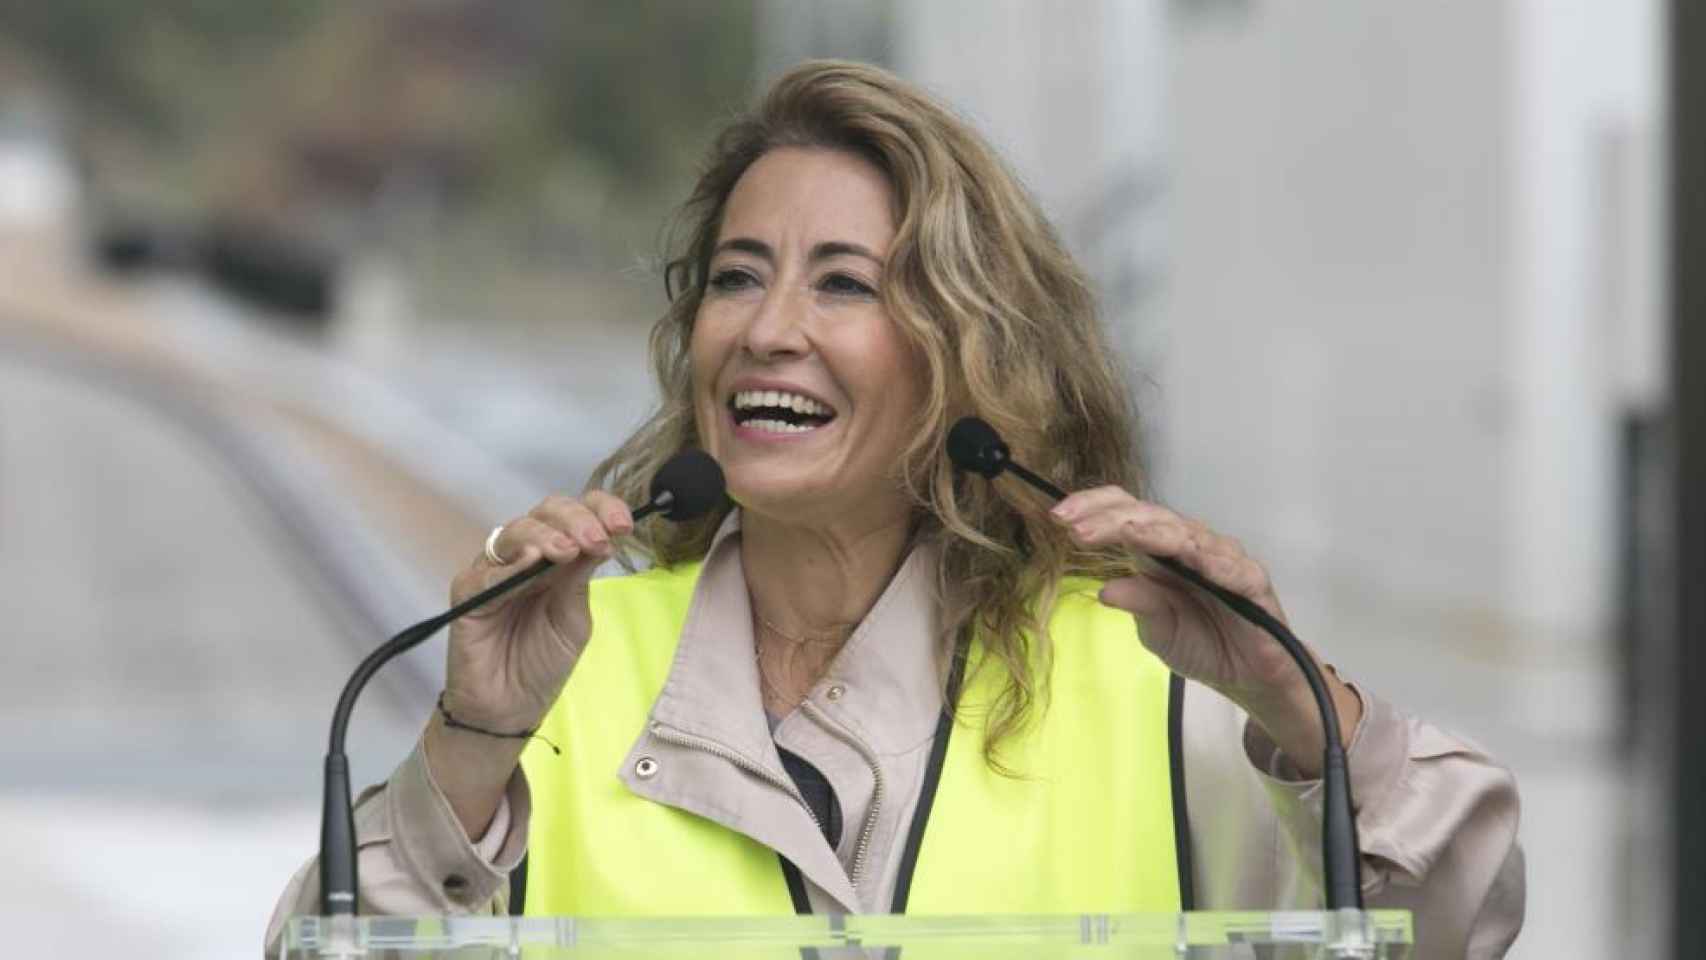 La ministra de Transportes, Movilidad y Agenda Urbana, Raquel Sánchez.